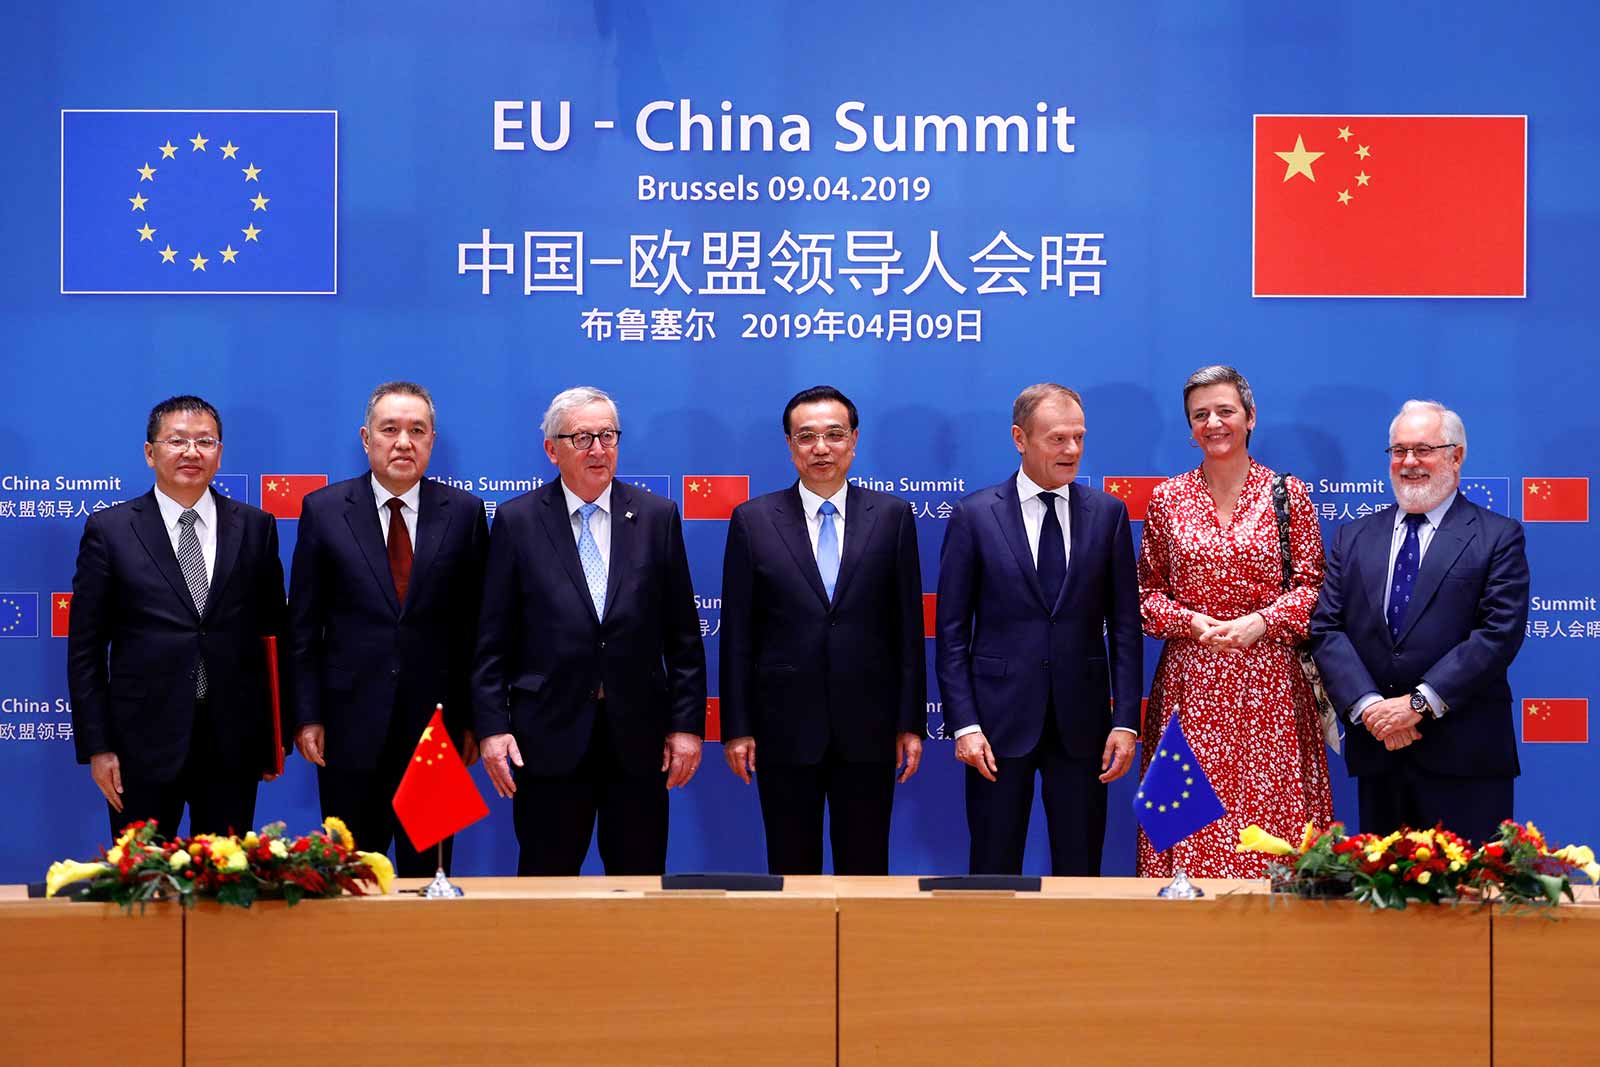 EU-China Summit 2019